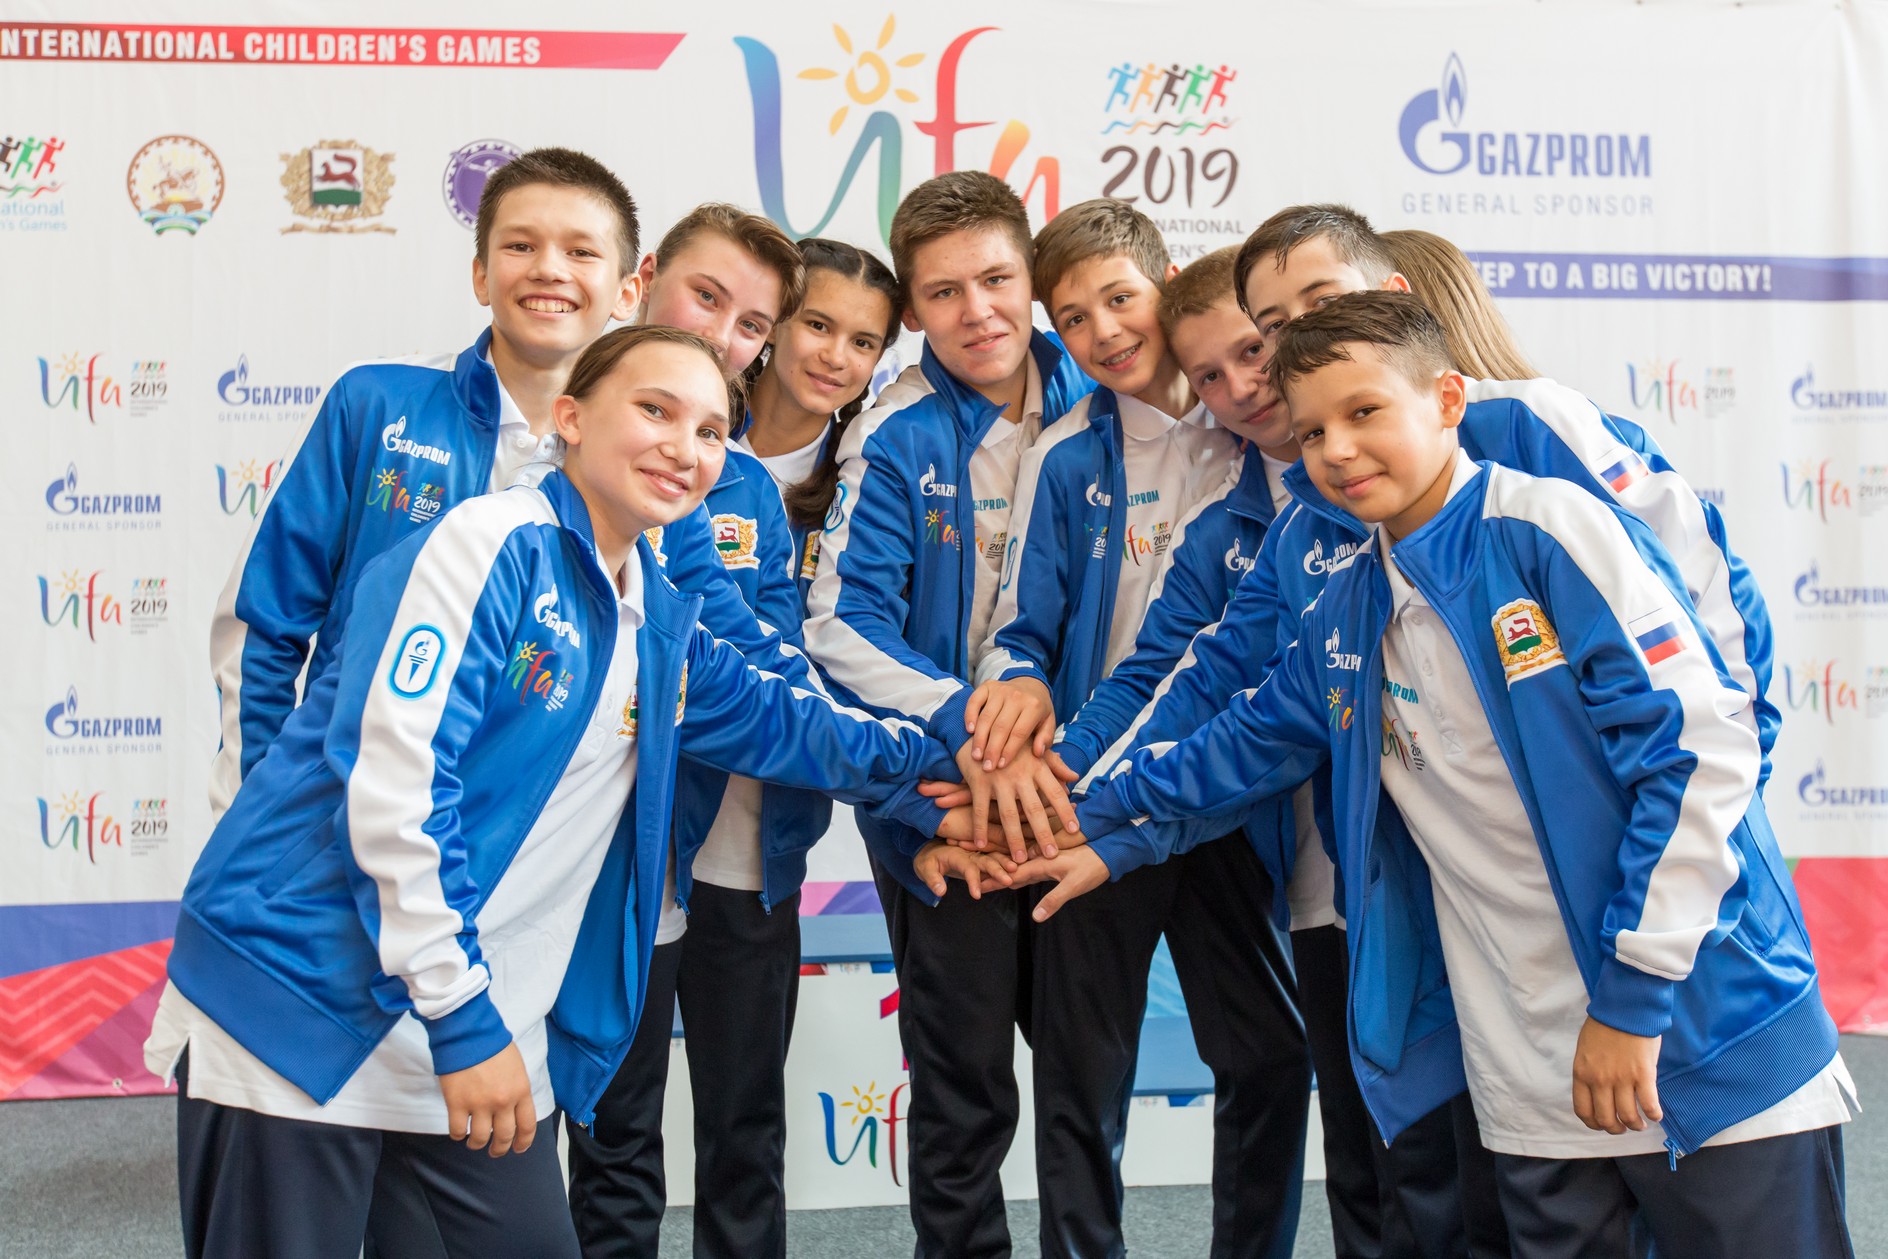 International Children’s Games held in Ufa